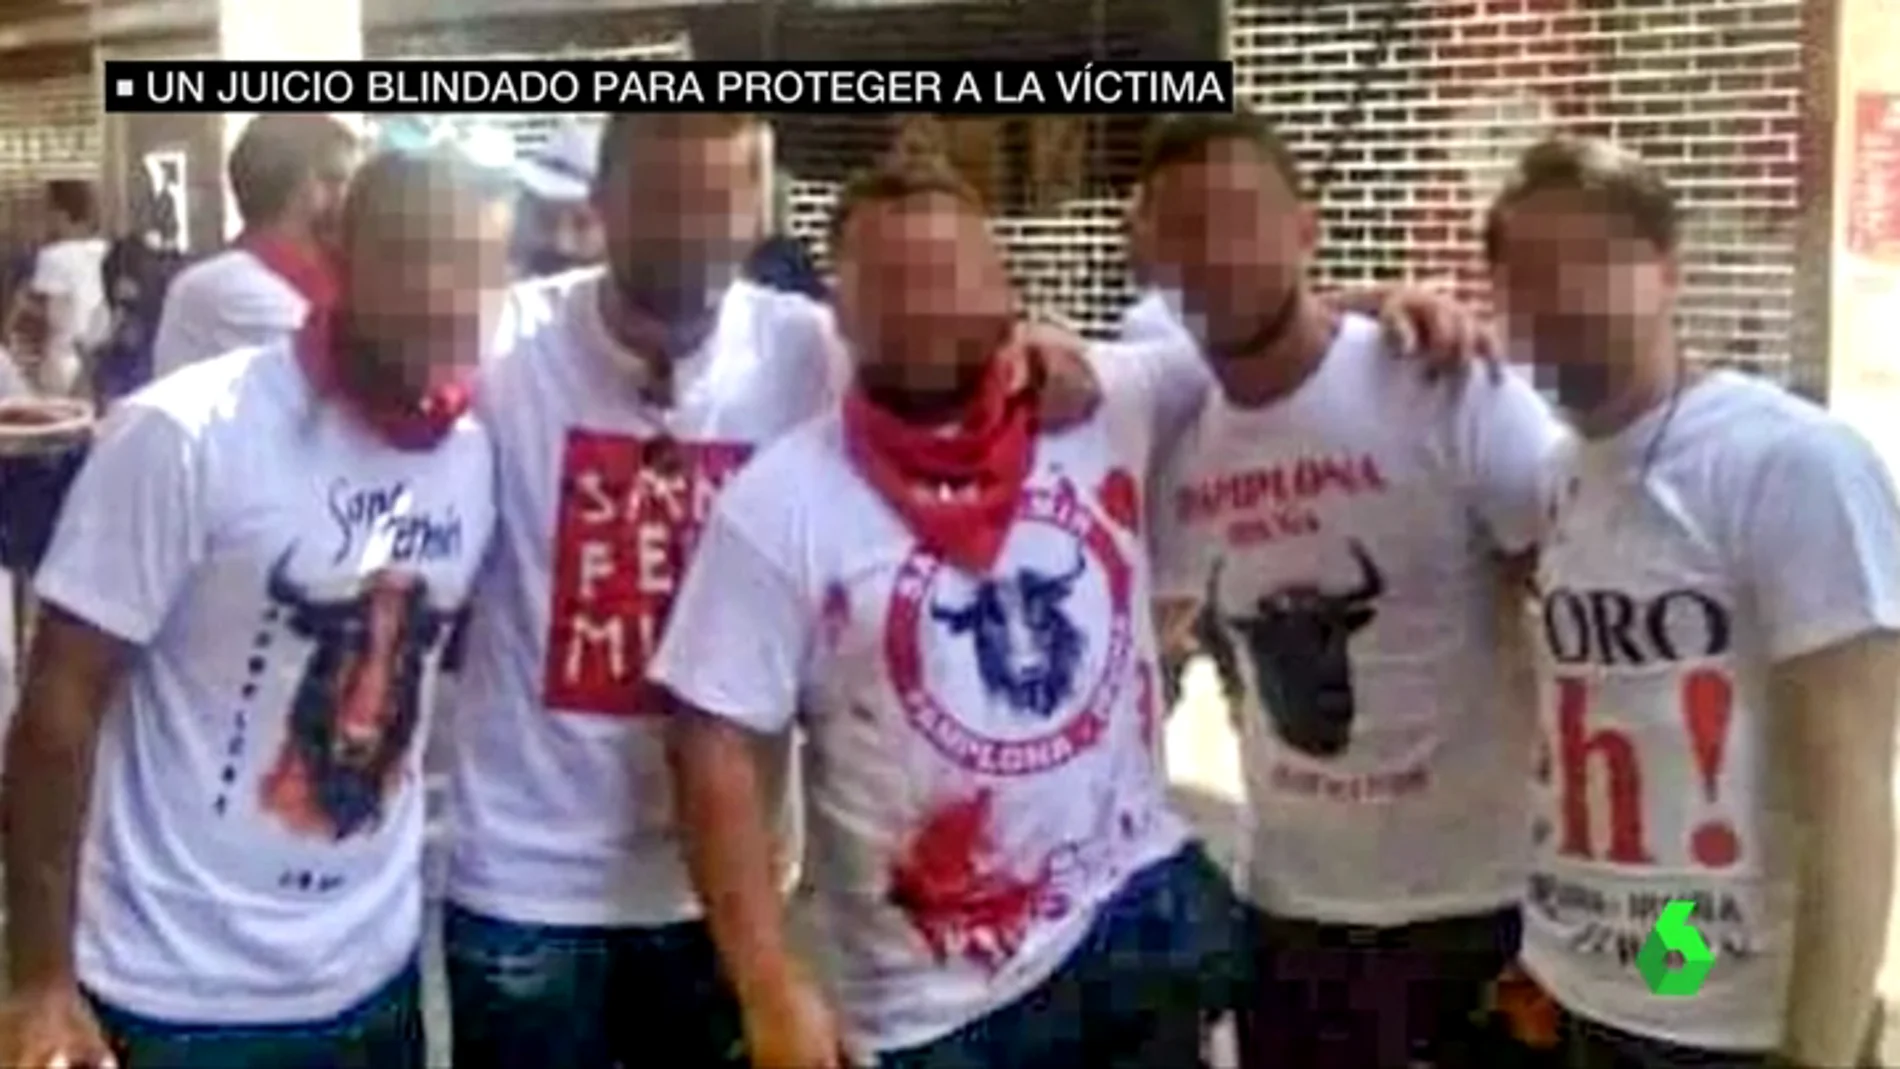 Los cinco acusados de la violación múltiple en San Fermín se sientan en el banquillo